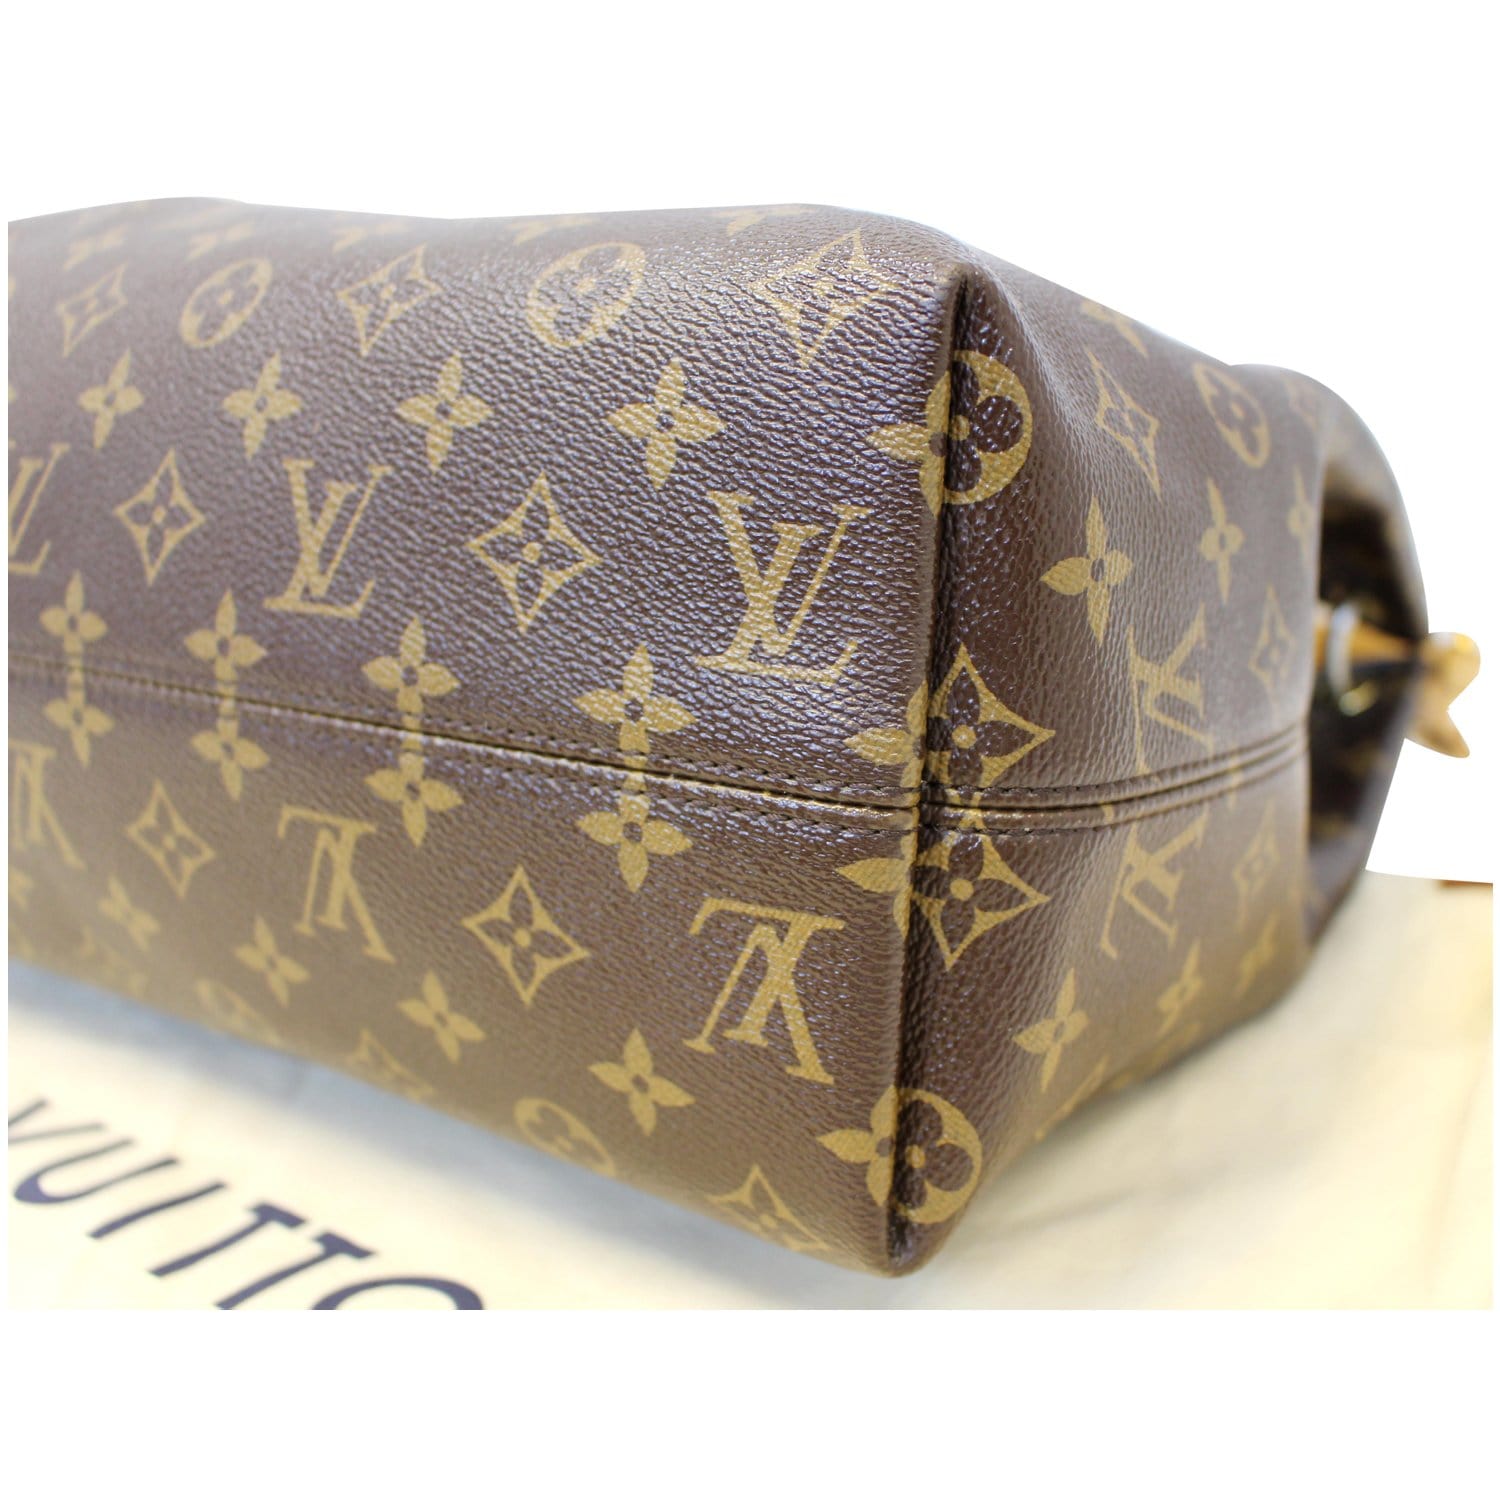 Louis Vuitton 2018 pre-owned Graceful MM Shoulder Bag - Farfetch